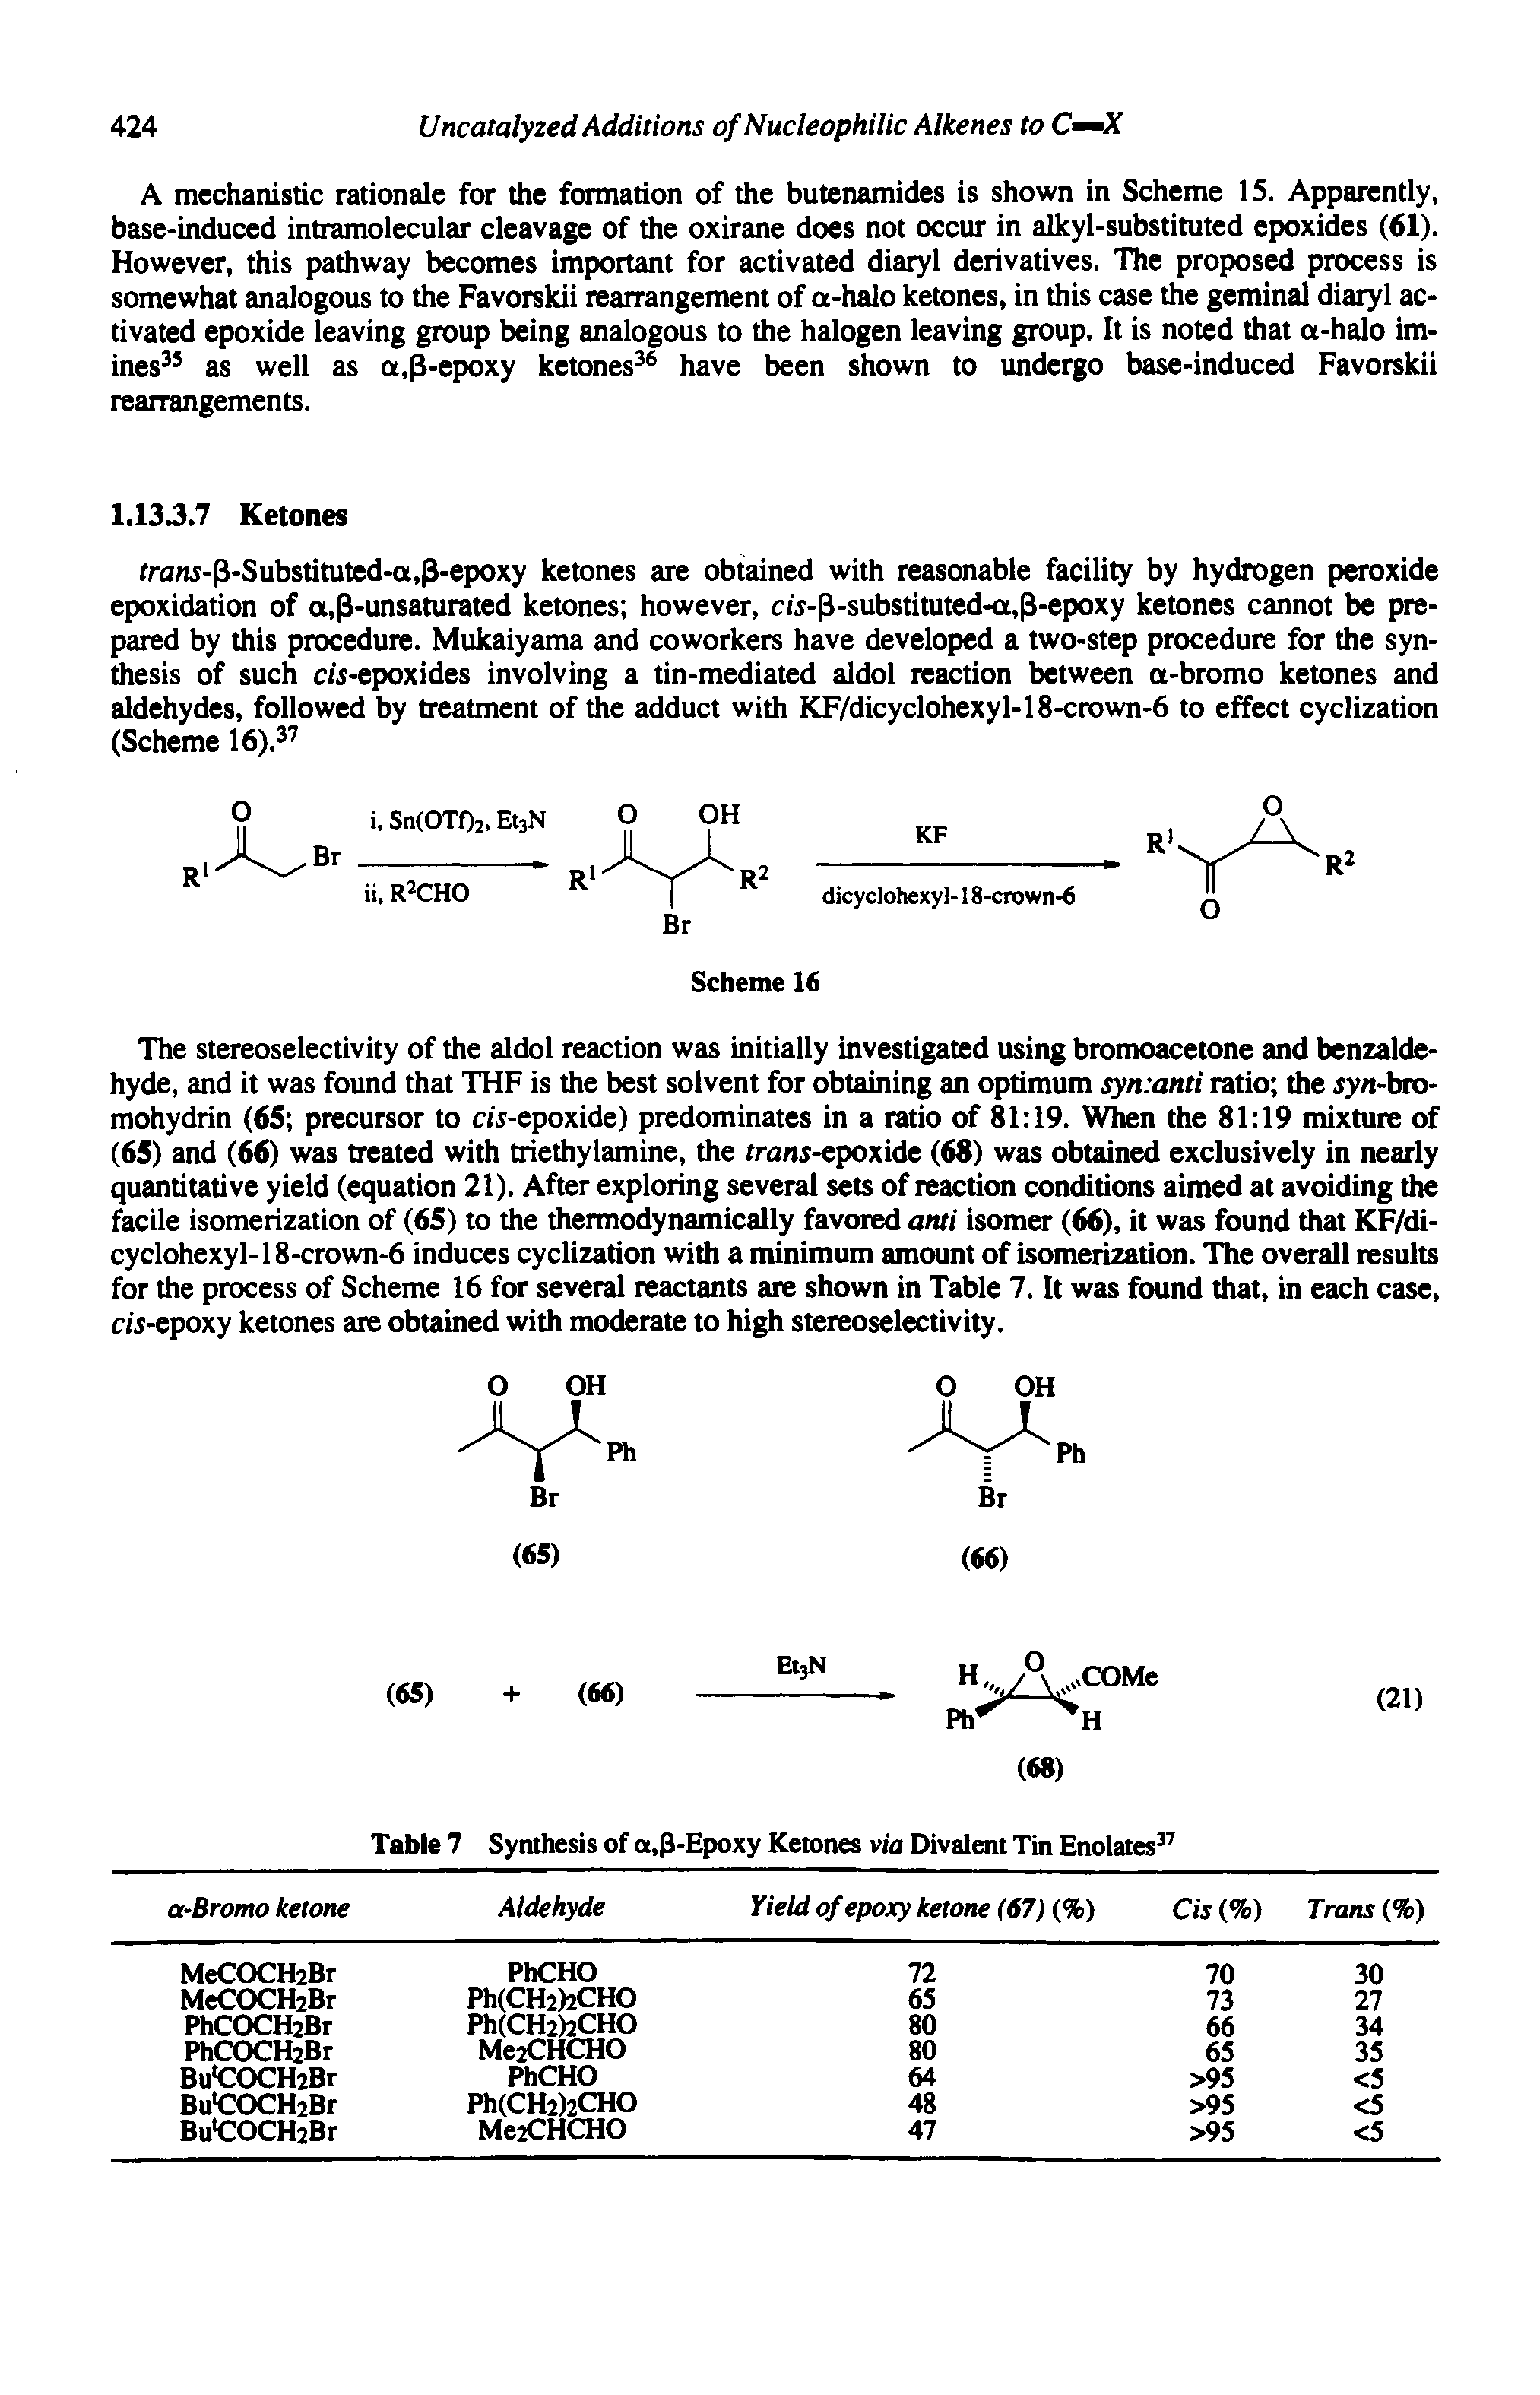 Table 7 Synthesis of a,3-Epoxy Ketones via Divalent Tin Enolates ...